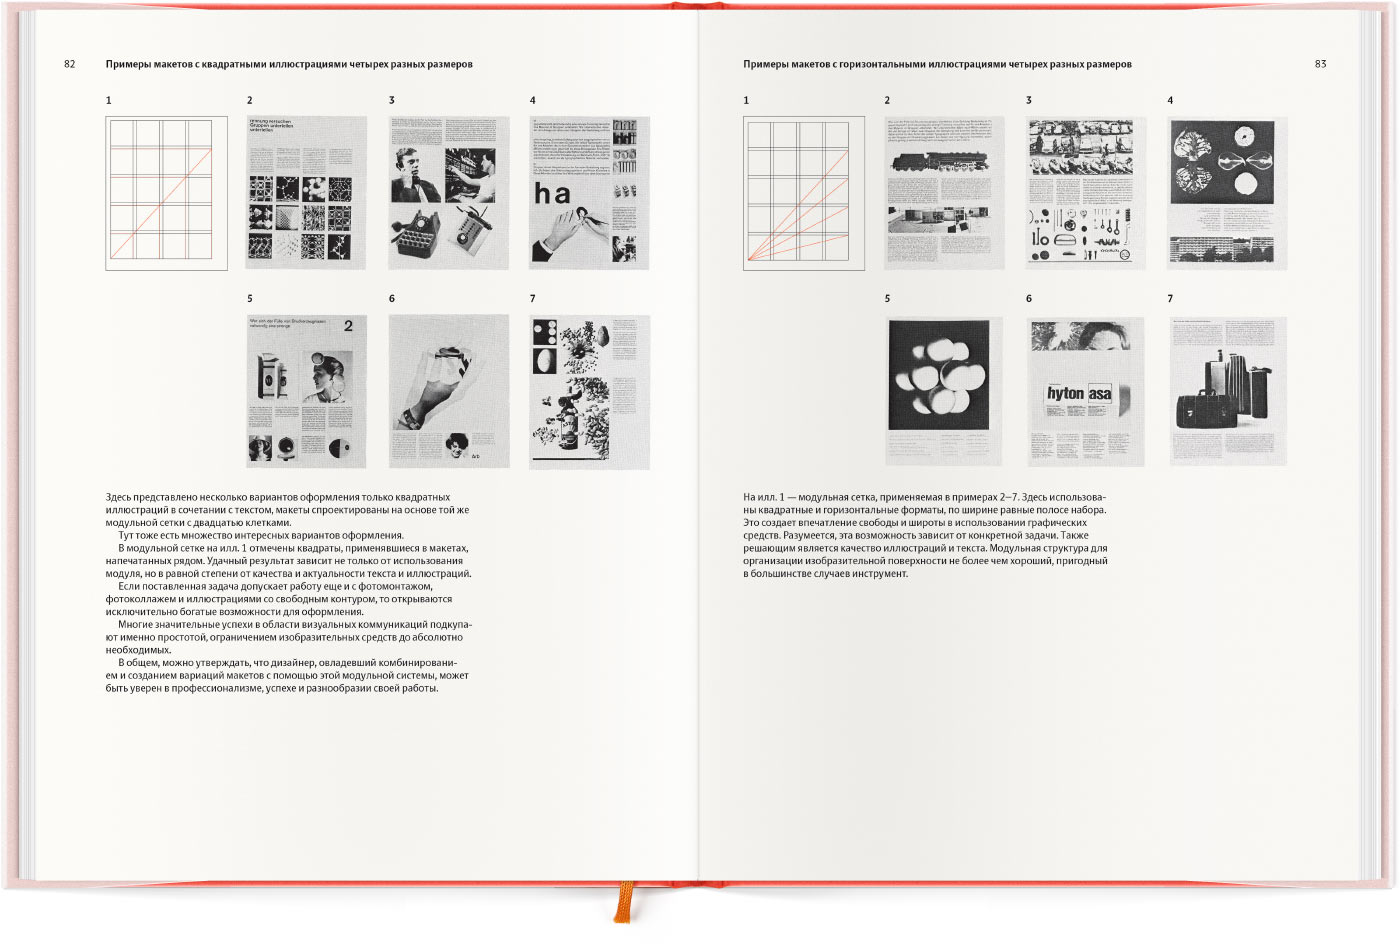 ТОП-10 книг по типографике от эксперта